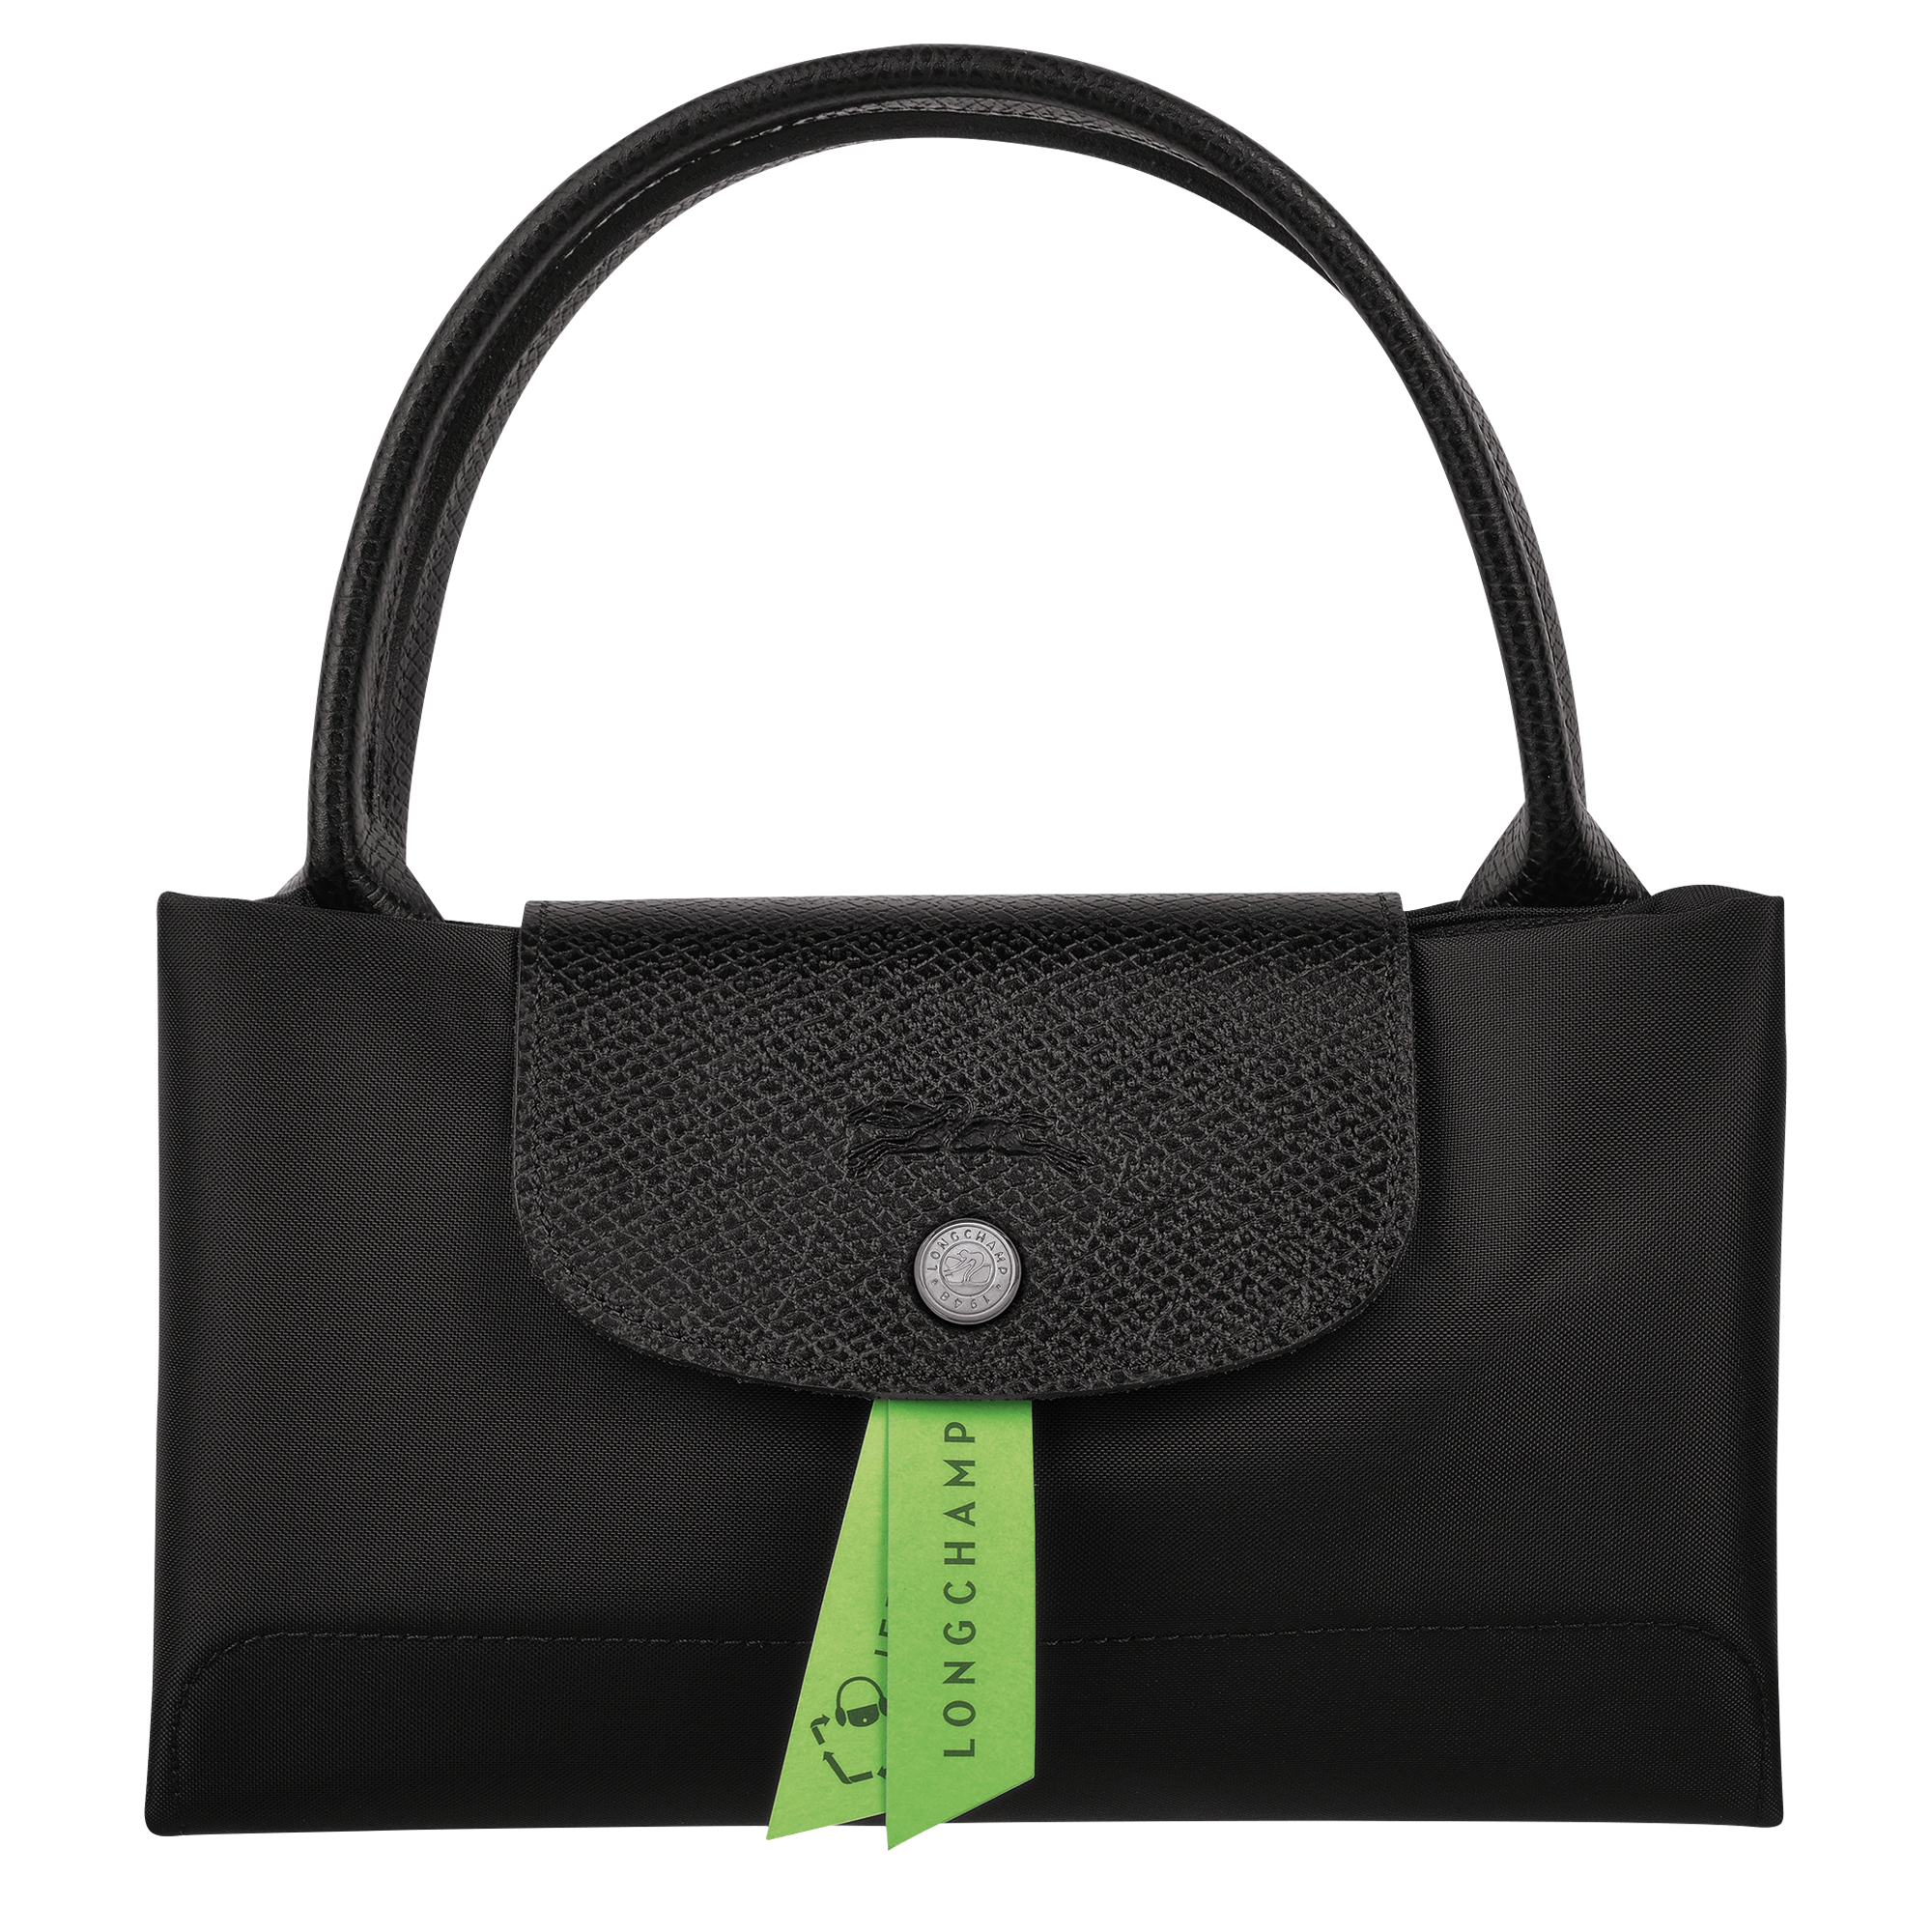 Le Pliage Green Handtasche M, Schwarz